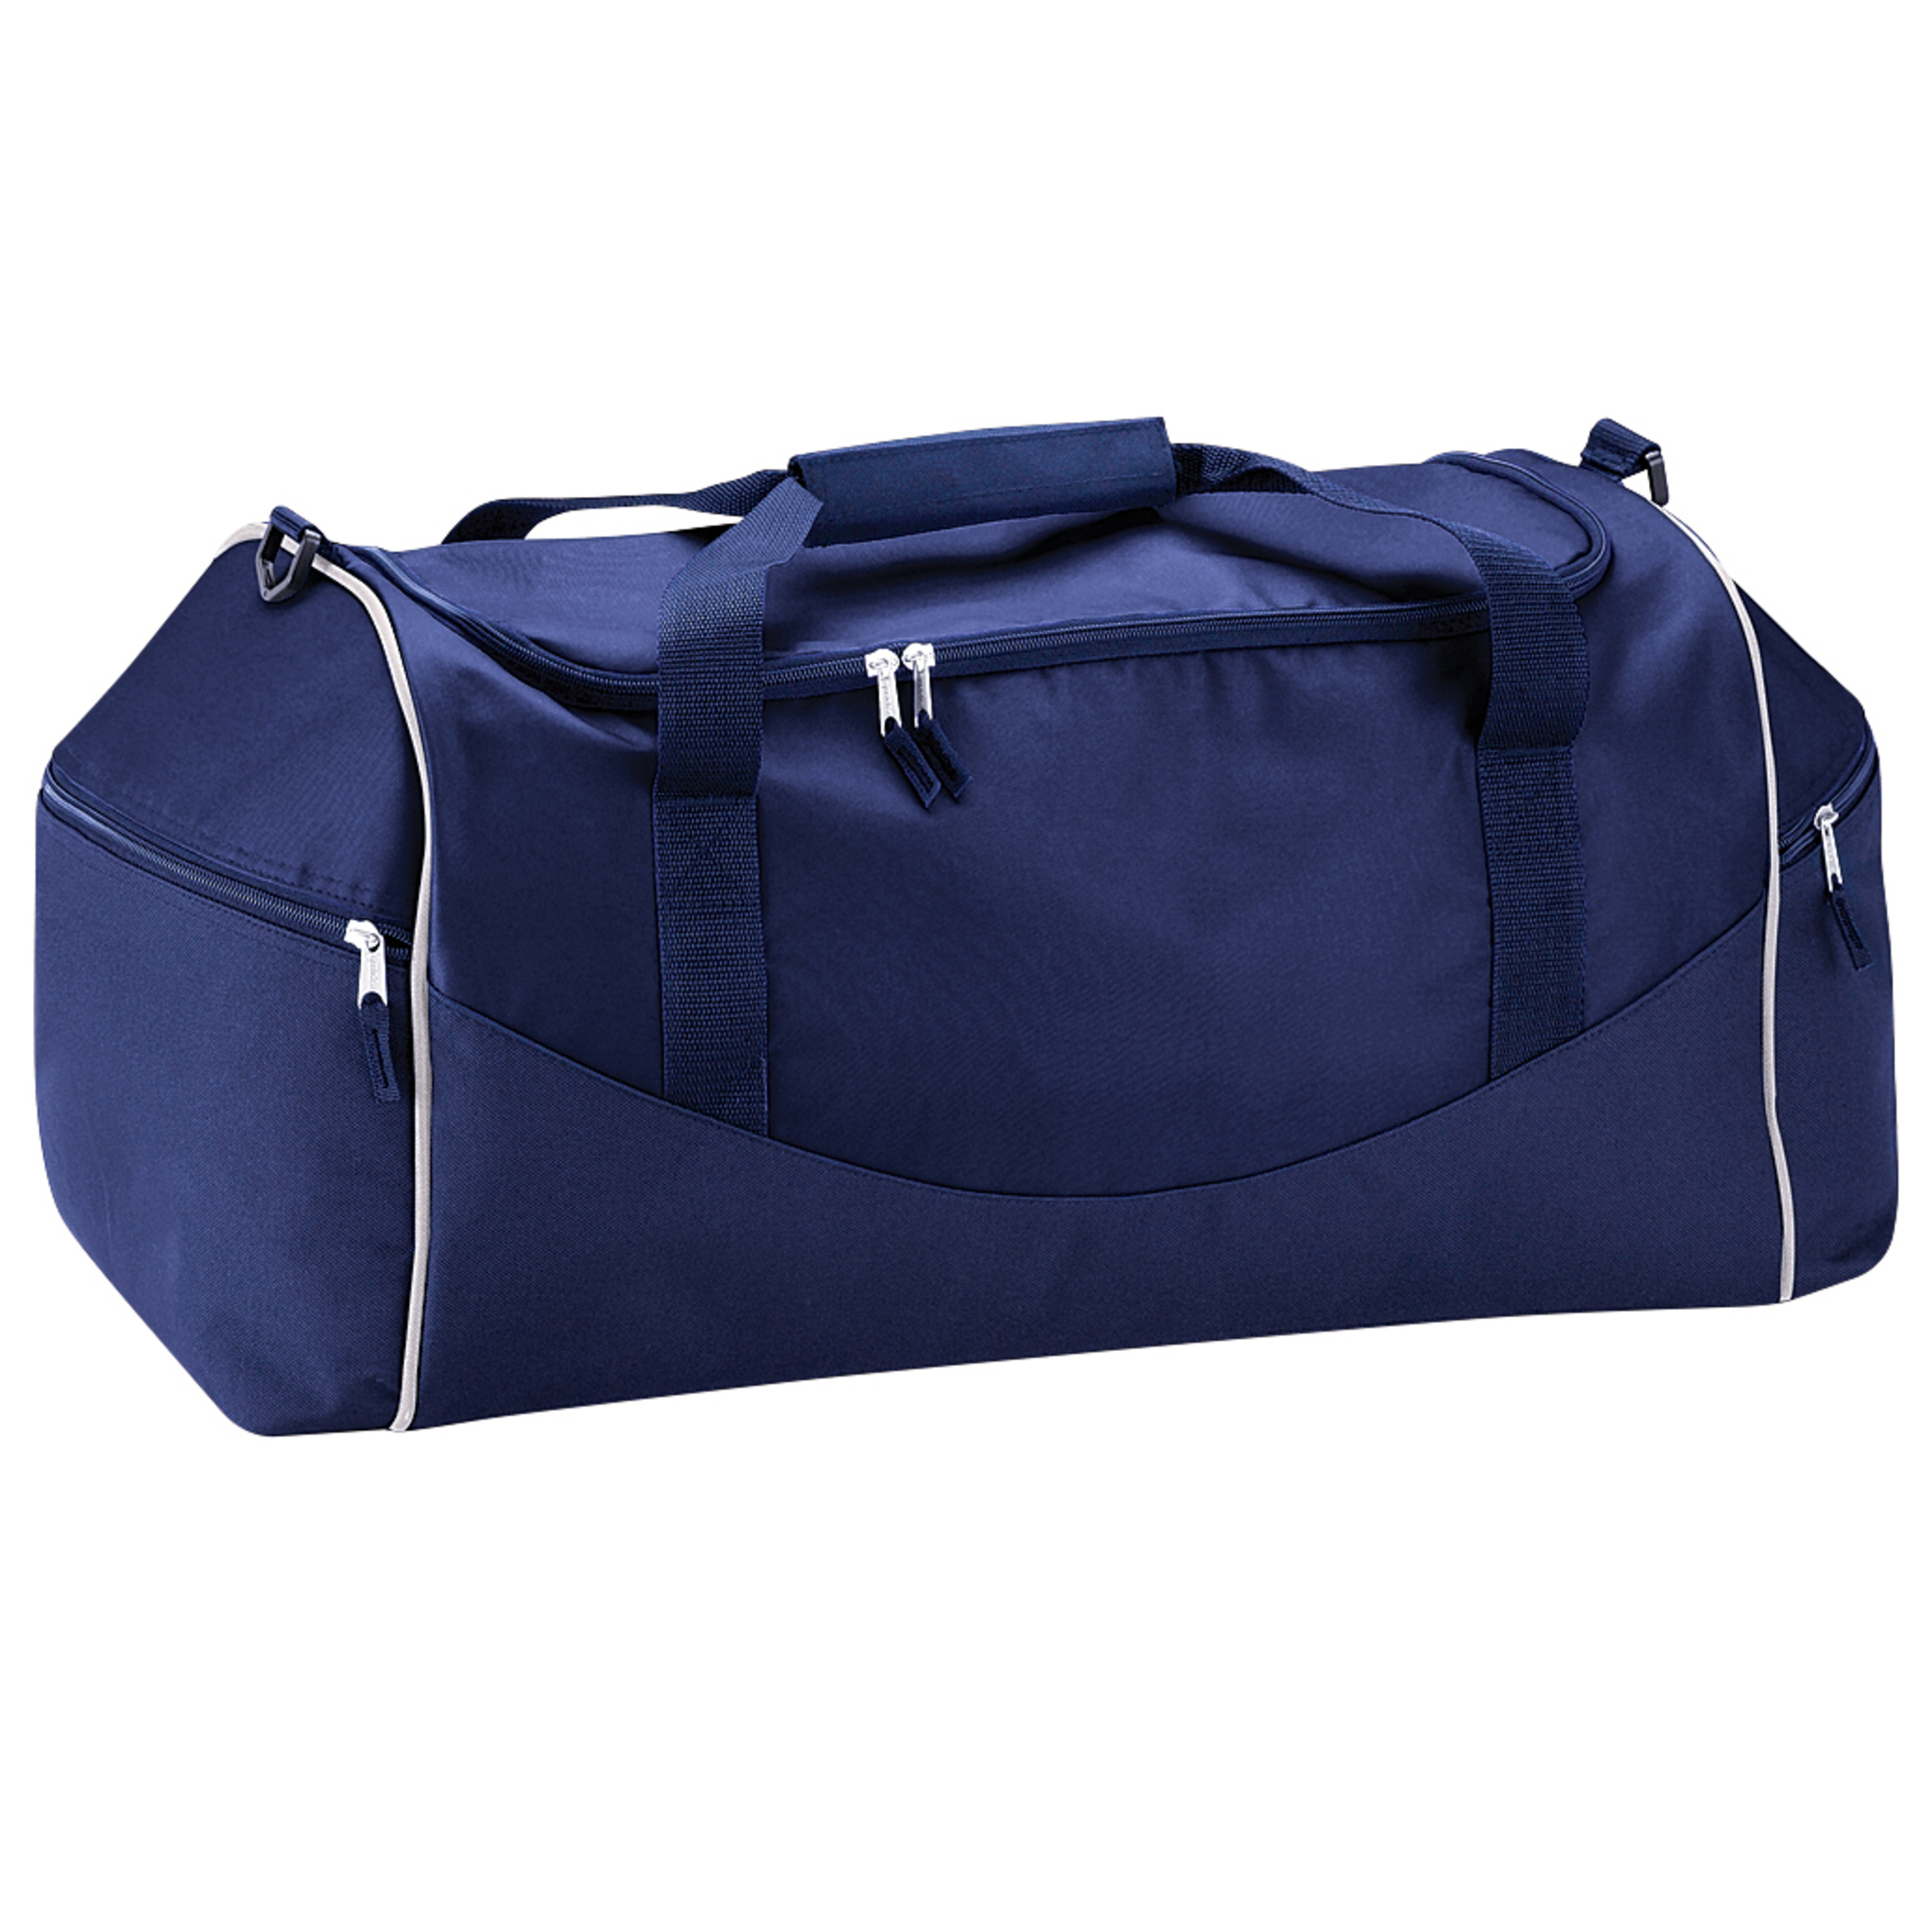 Bolsa De Deporte / Viaje Modelo Teamwear 55 Litros (paquete De 2) Quadra - Azul Marino  MKP